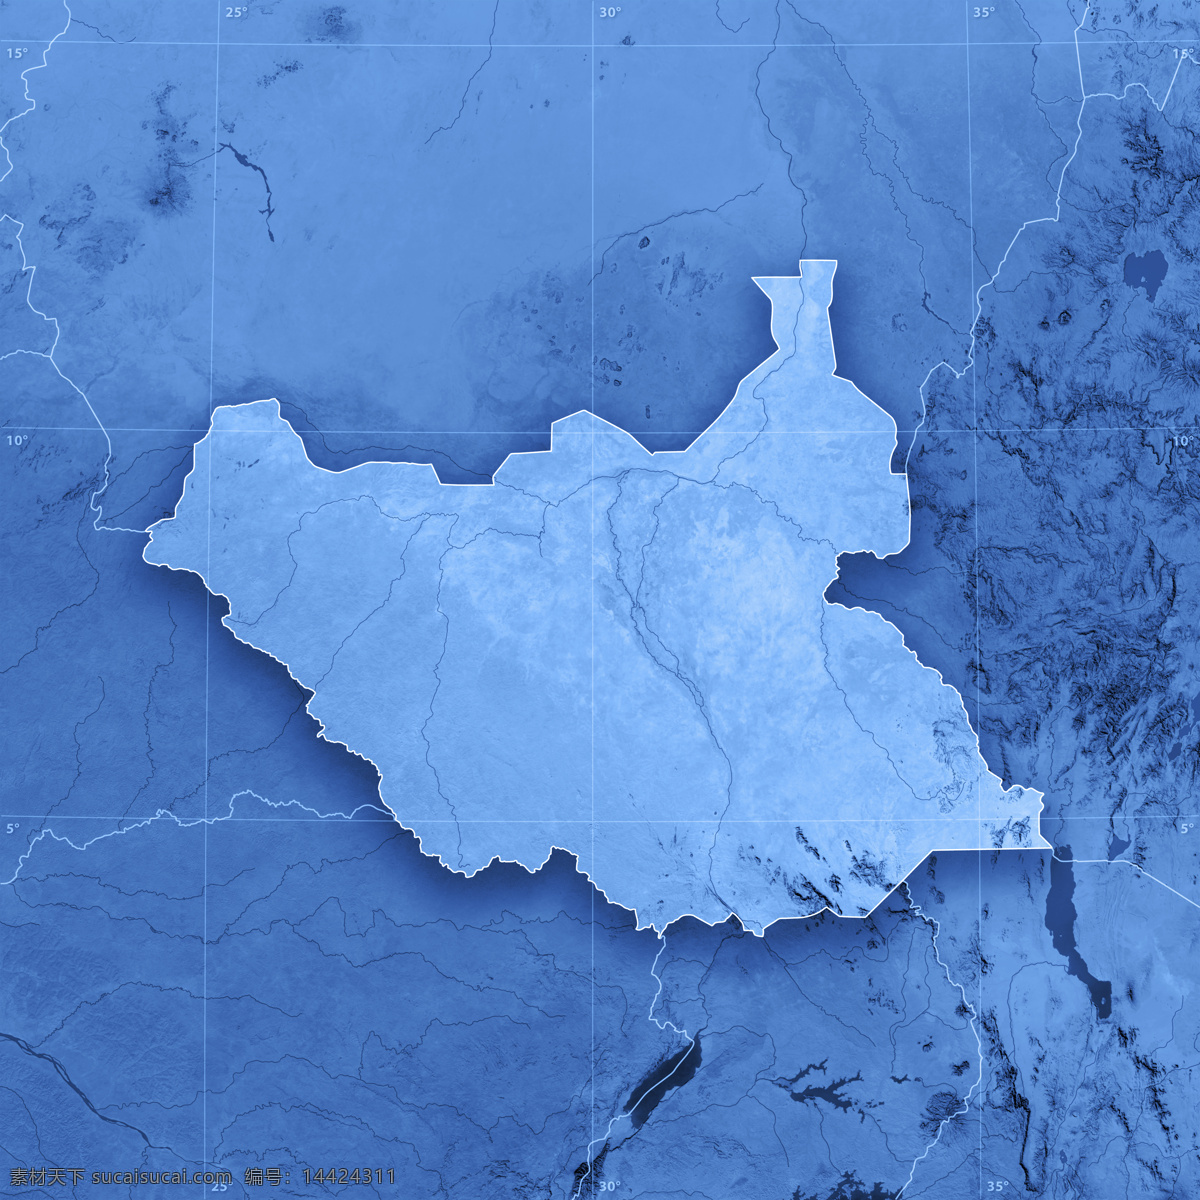 蓝色3d地图 地图 蓝色地图 地图模板 经线 纬线 经度 纬度 办公学习 其他类别 生活百科